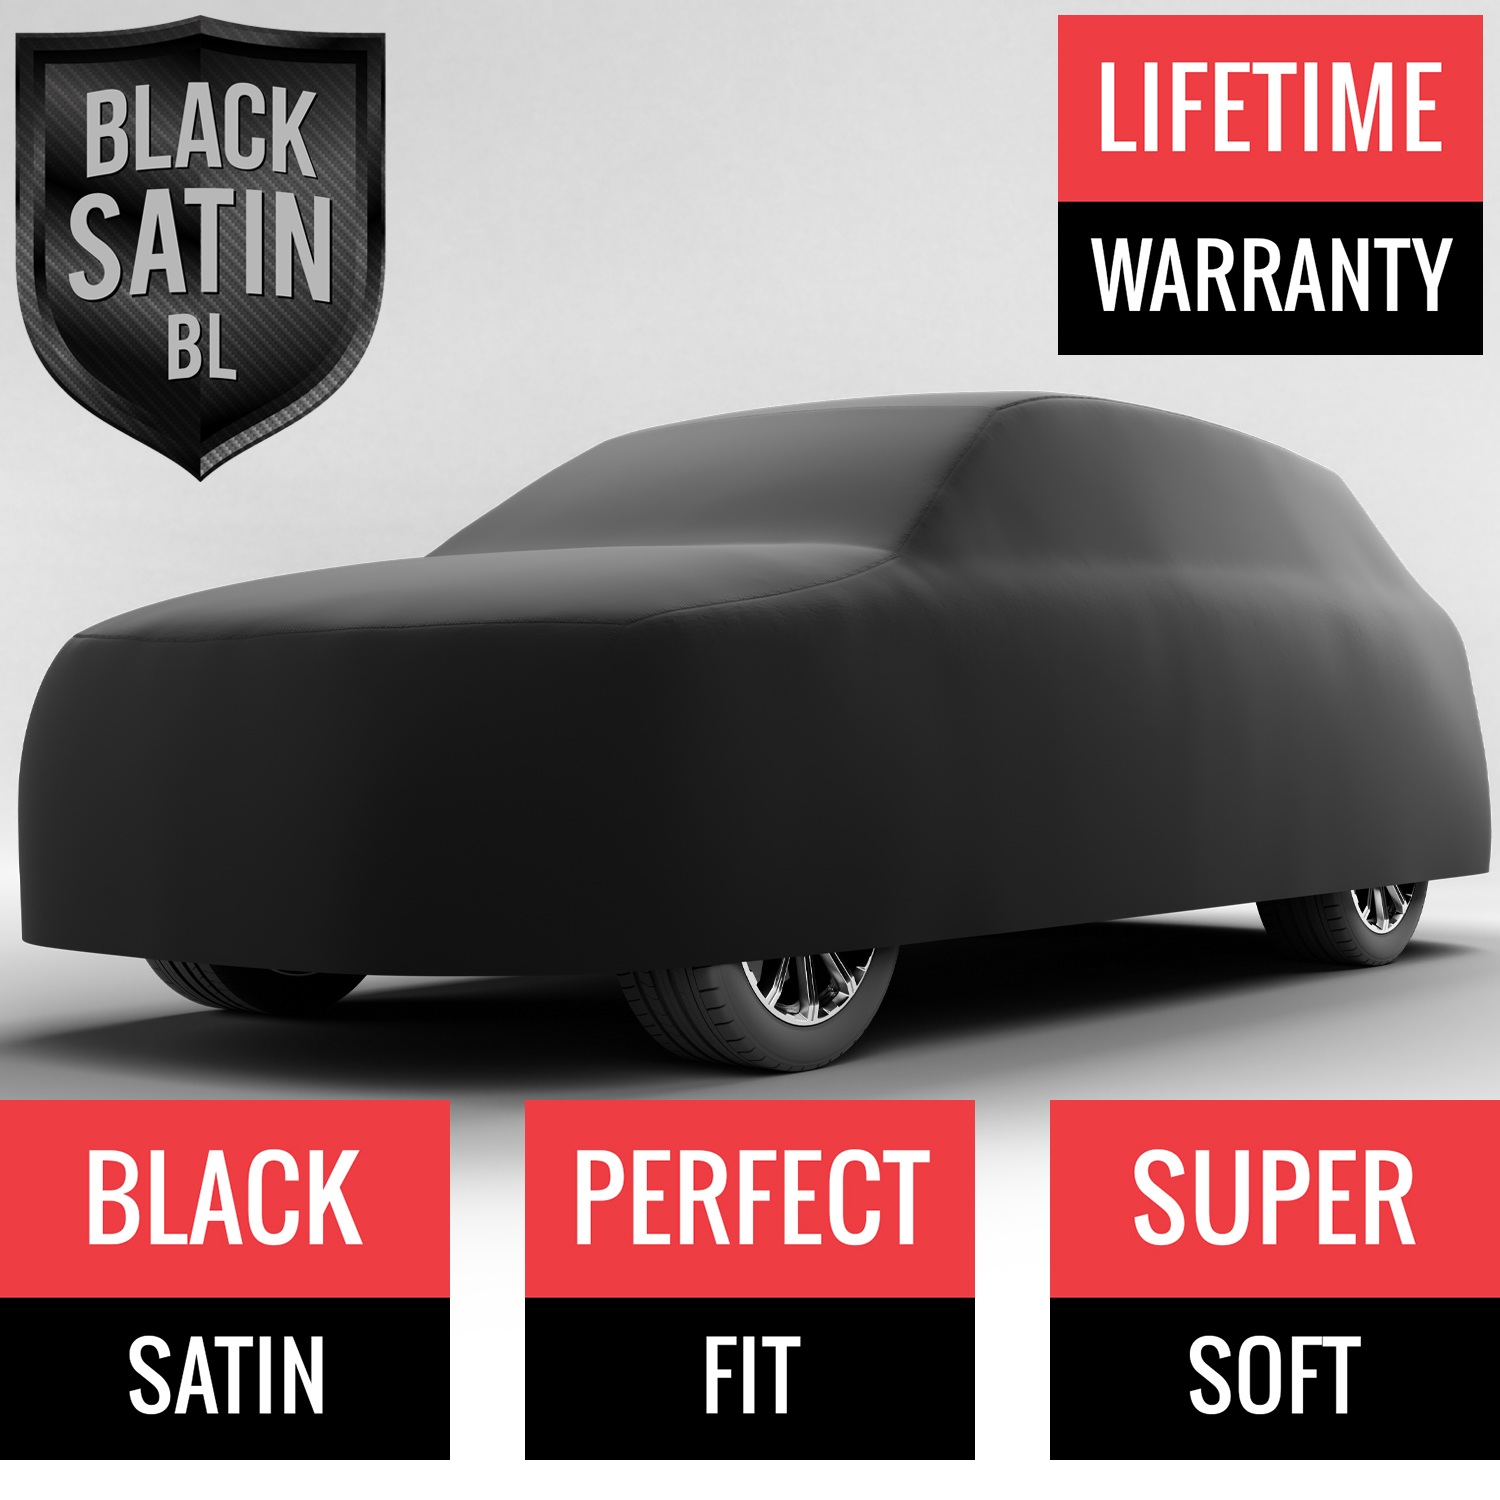 Black Satin BL - Black Car Cover for Mazda CX-9 2021 SUV 4-Door